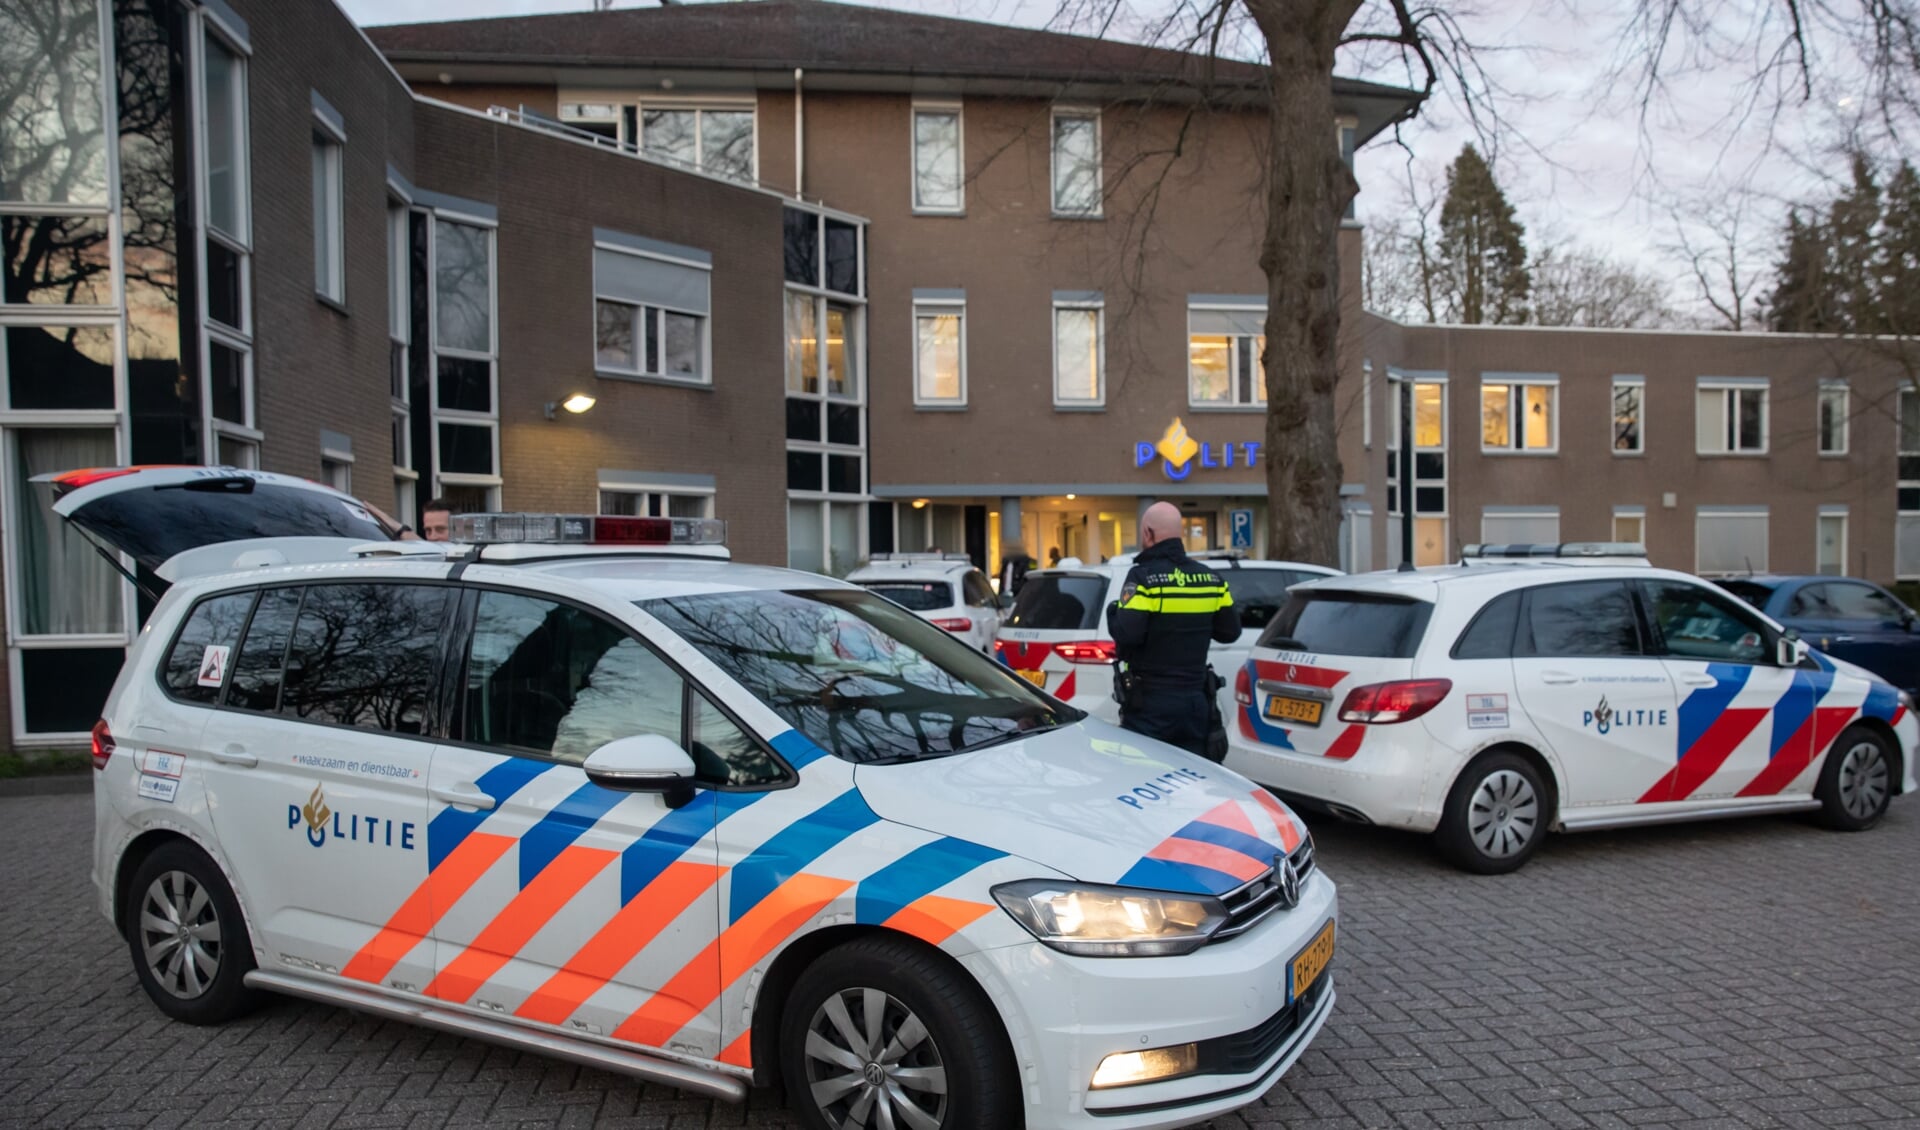 Terwijl zo beetje heel politie Eemland aanwezig was, bij en nabij de wedstrijd Spakenburg - PSV vlogen meerdere politieauto's uit Gooi en Vechtstreek dinsdagavond met grote spoed naar het politiebureau aan de Eemnesserweg in Baarn.